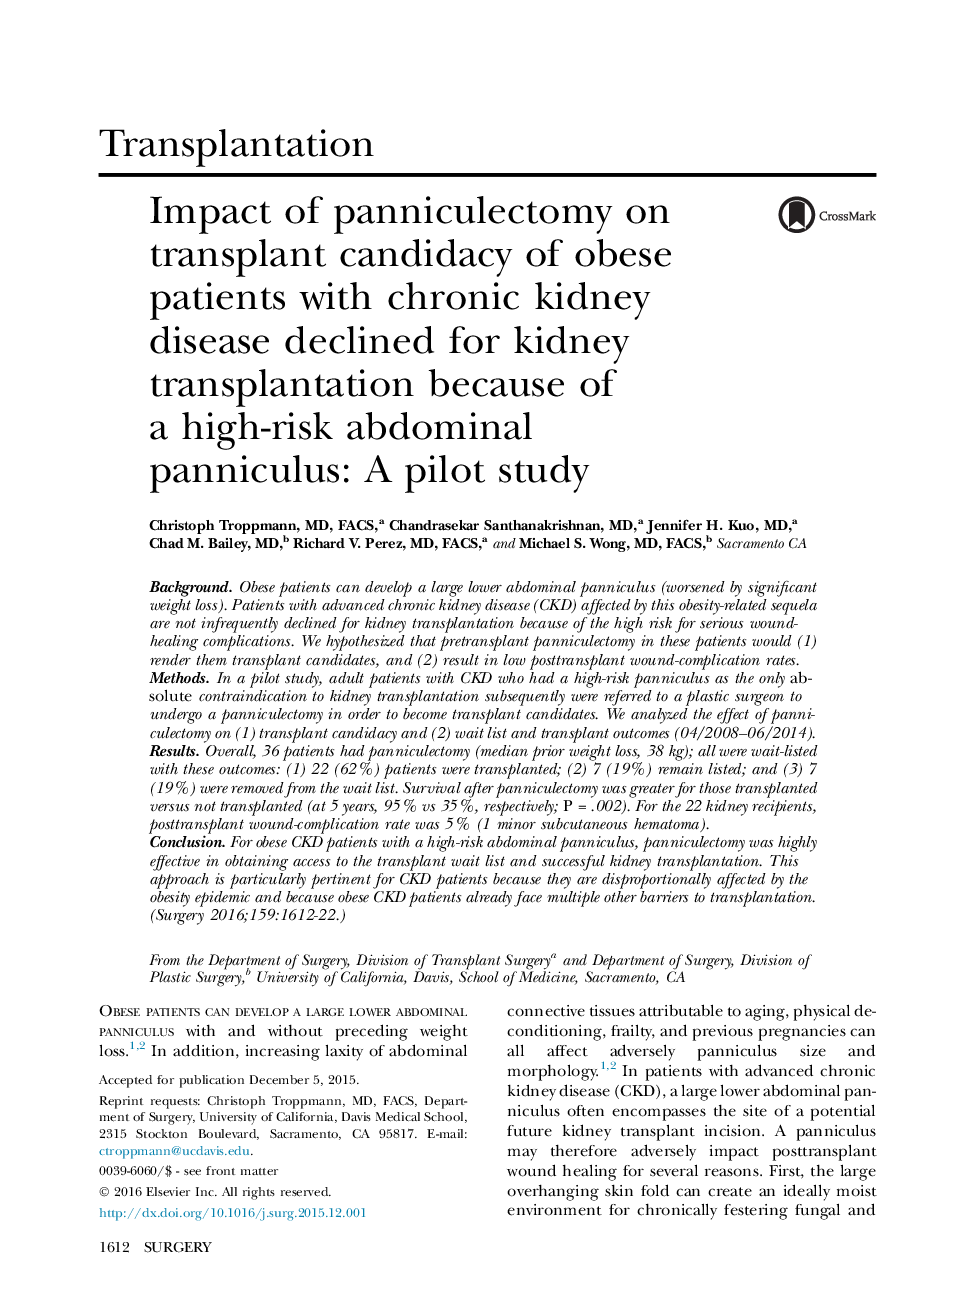 تاثیر پانکیکالکتومی بر روی پیوند کاندید شدن بیماران چاق مبتلا به بیماری مزمن کلیه به علت یک پانکیکولوس شکمی بالا در معرض خطر کلیه برای پیوند کلیه کاهش یافت: یک مطالعه ی آزمایشی 